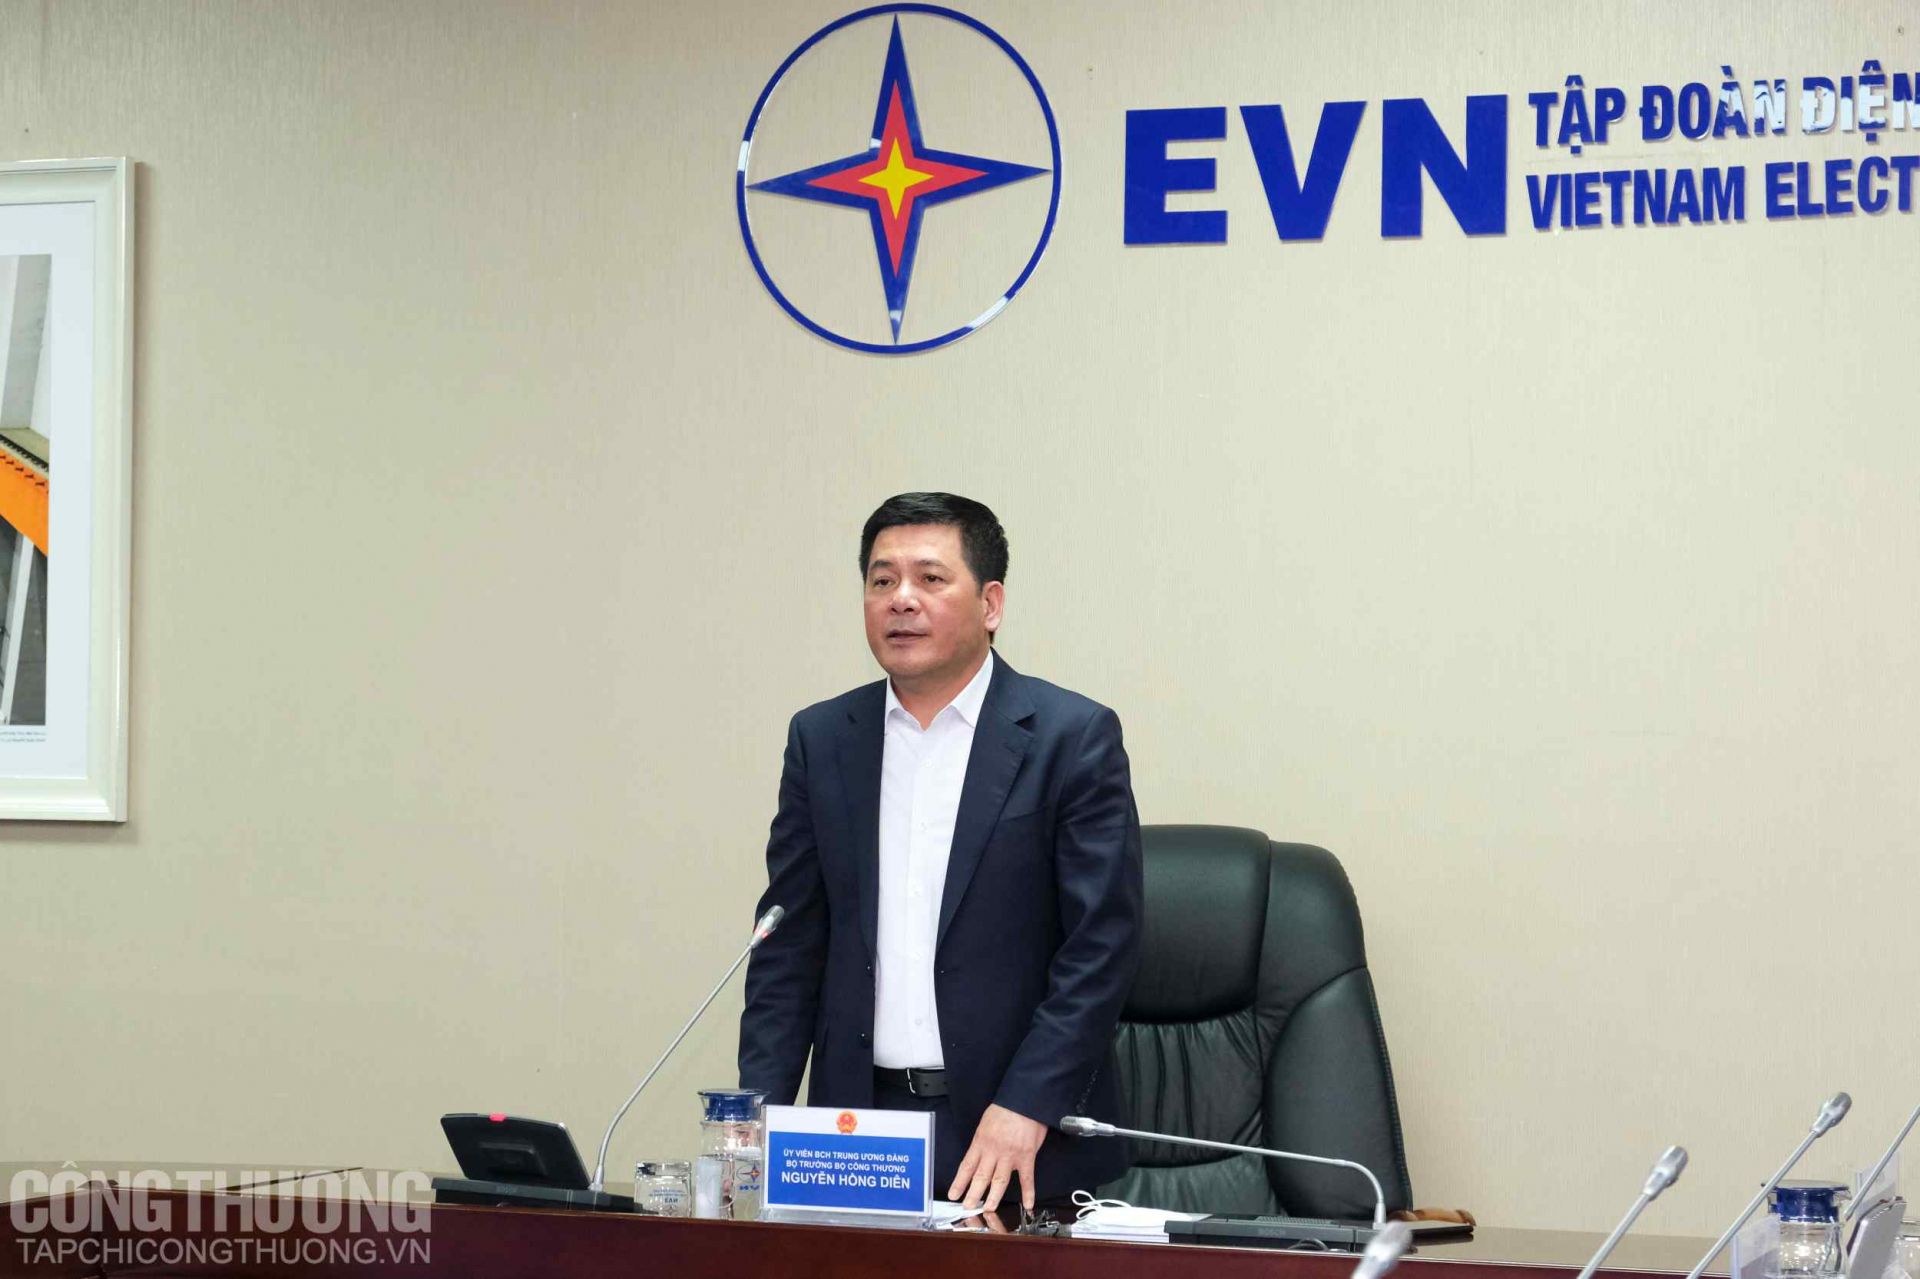 Khẳng định vai trò của EVN trong hệ thống điện quốc gia, Bộ trưởng Nguyễn Hồng Diên đề nghị Tập đoàn tiếp tục phát huy để bảo đảm công khai, minh bạch và công bằng giữa các thành phần tham gia vào cung ứng điện cho nền kinh tế đất nước